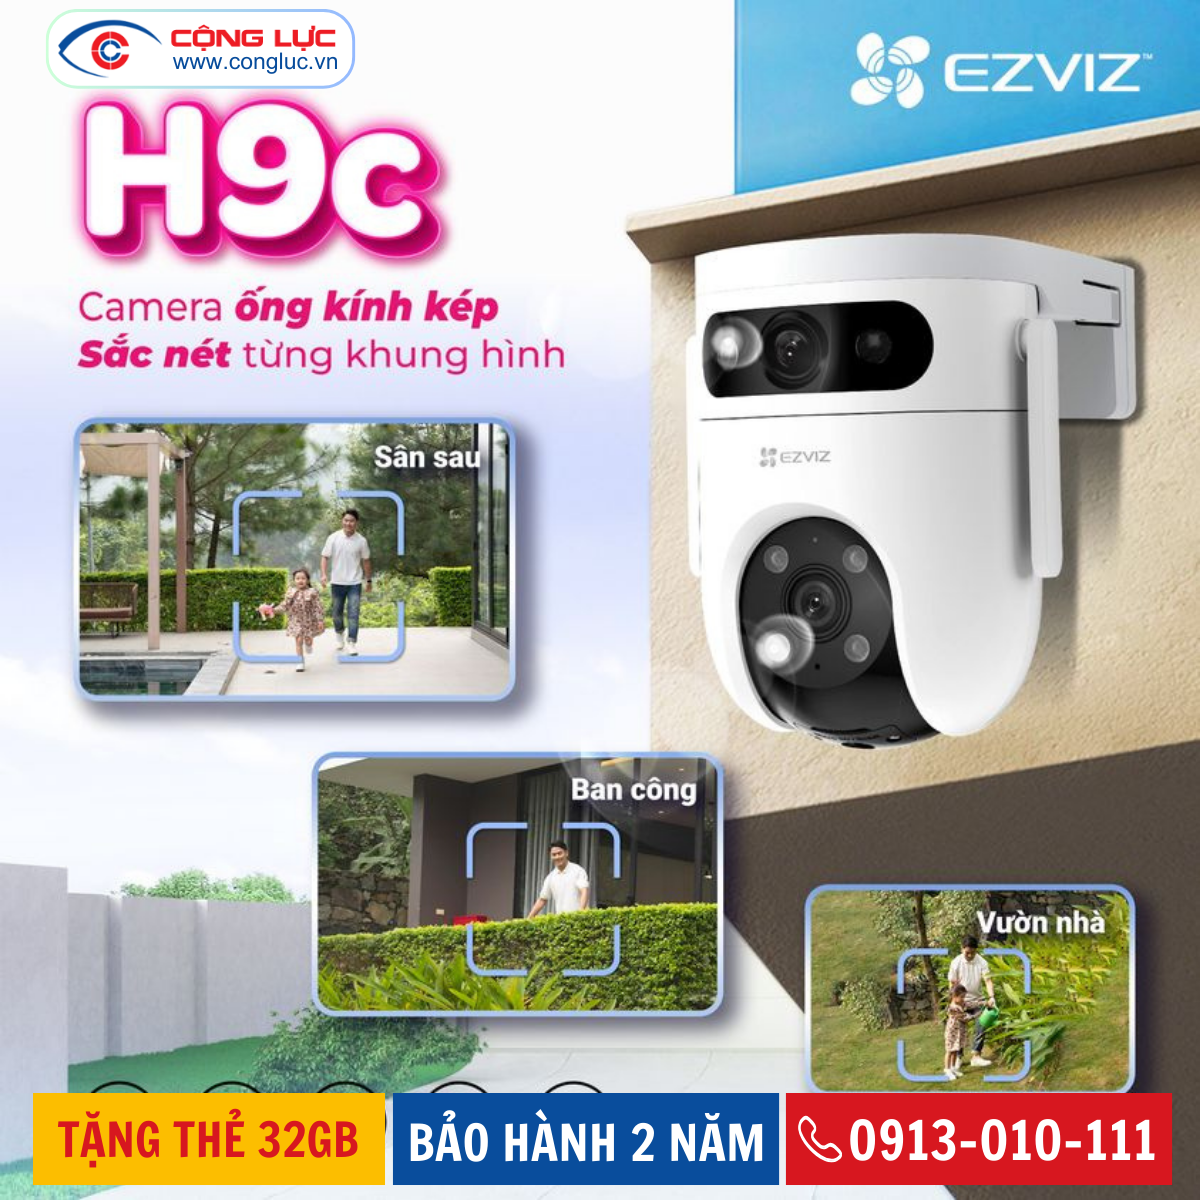 thông số kỹ thuật camera wifi 2 mắt Ezviz H9C 6MP chính hãng